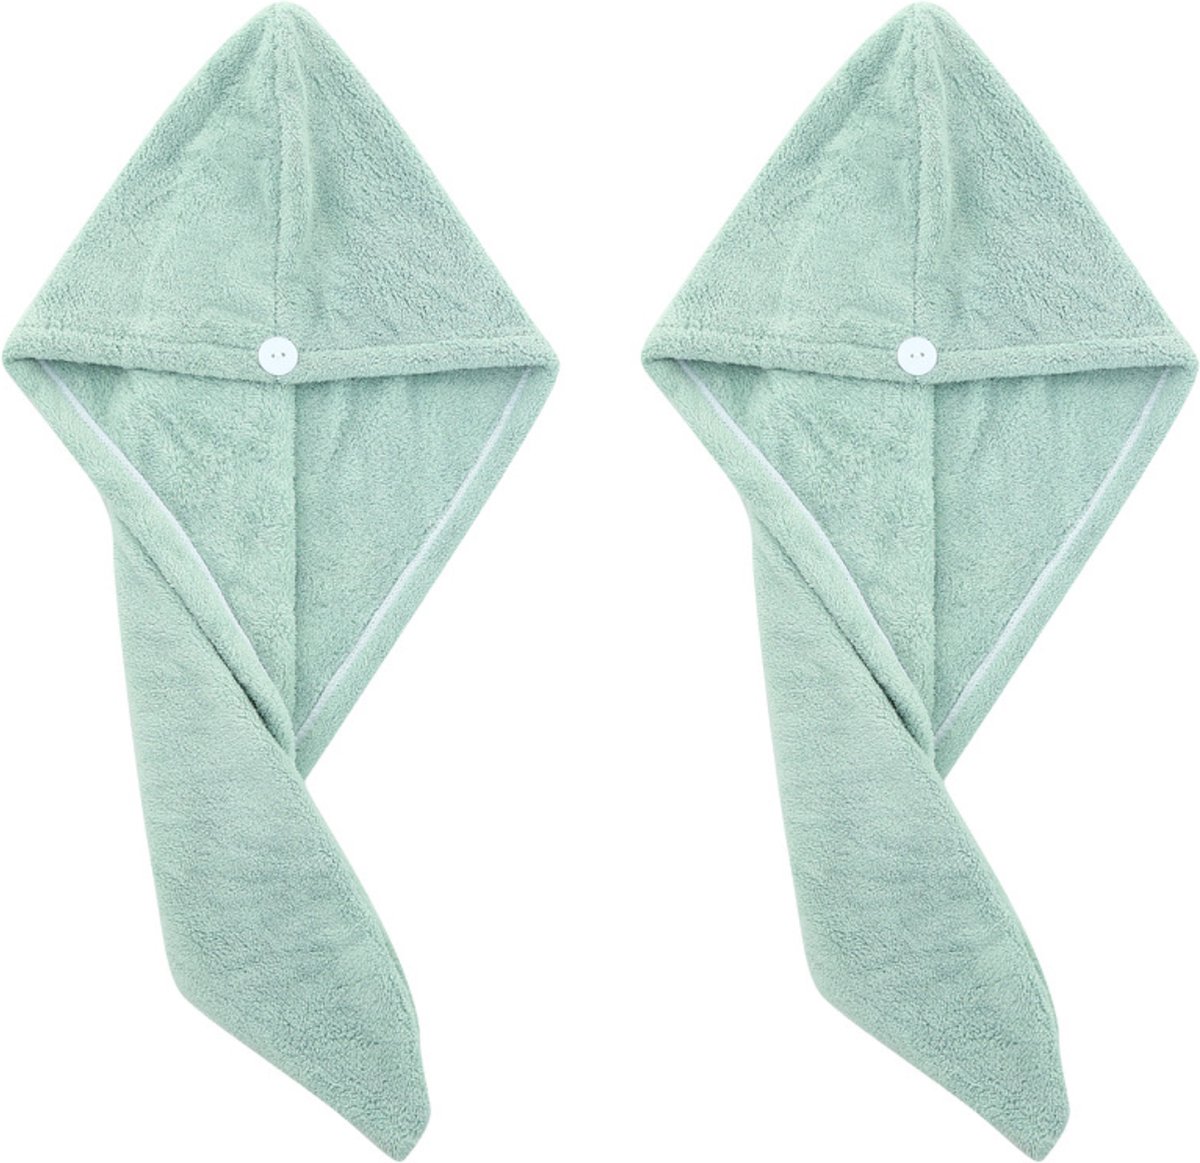 2x Haarhanddoek - Hoofdhanddoek - Hair towel - Sneldrogende handdoek - Haardroger - Haar handdoek - Groen